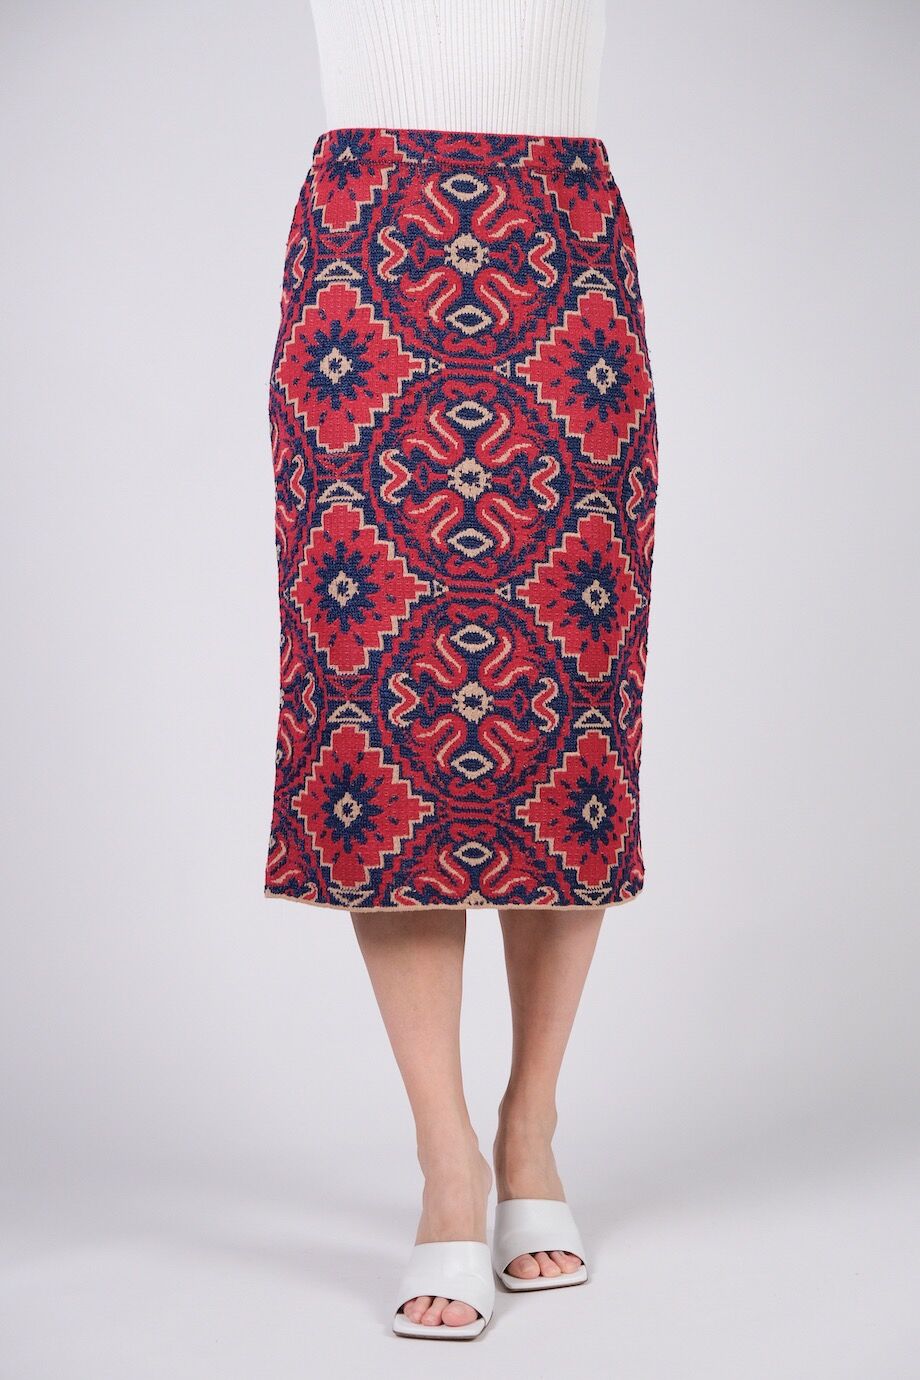 image 2 Трикотажная юбка красного цвета с синим орнаментом